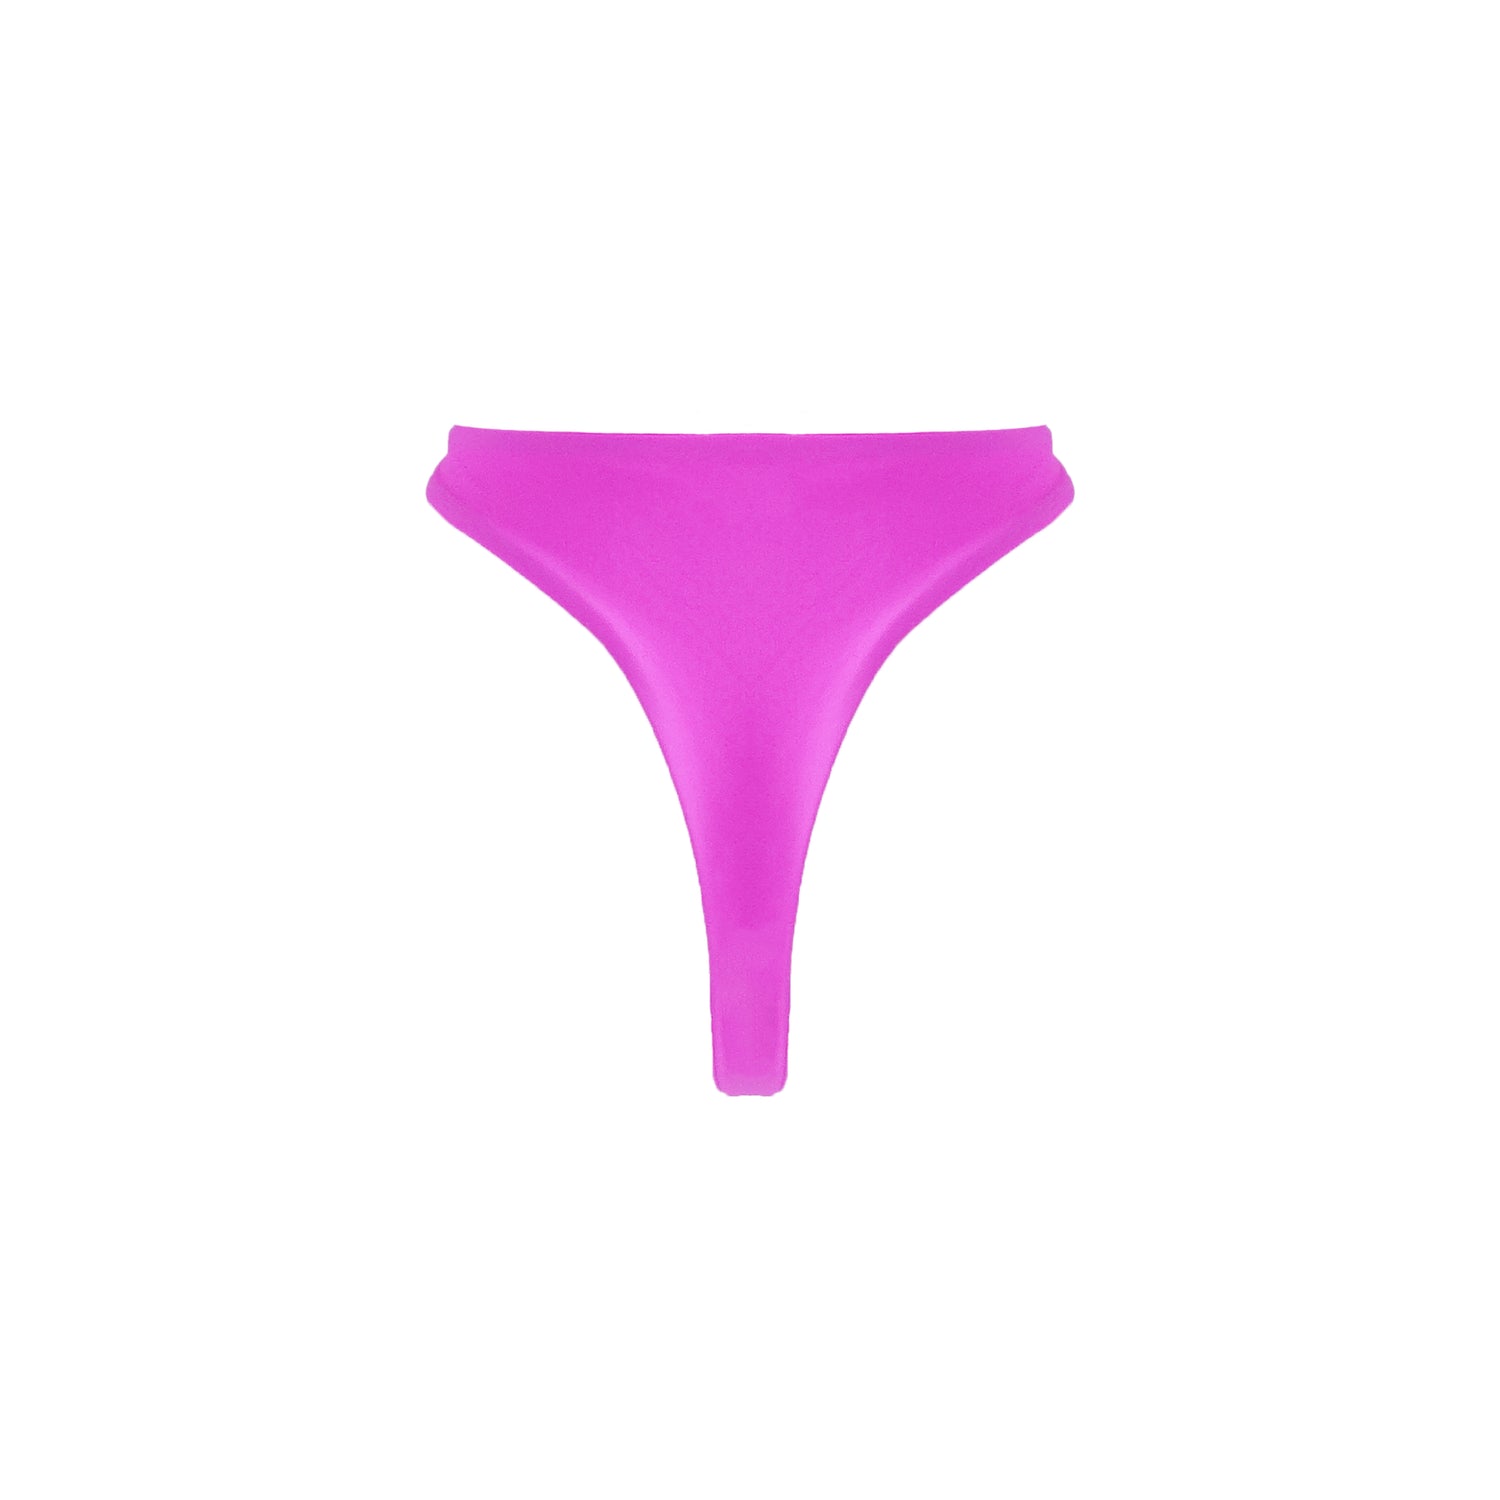 Tuscany Bottom | Shop Bikini Bottoms | mylo swim – Mylo Swim